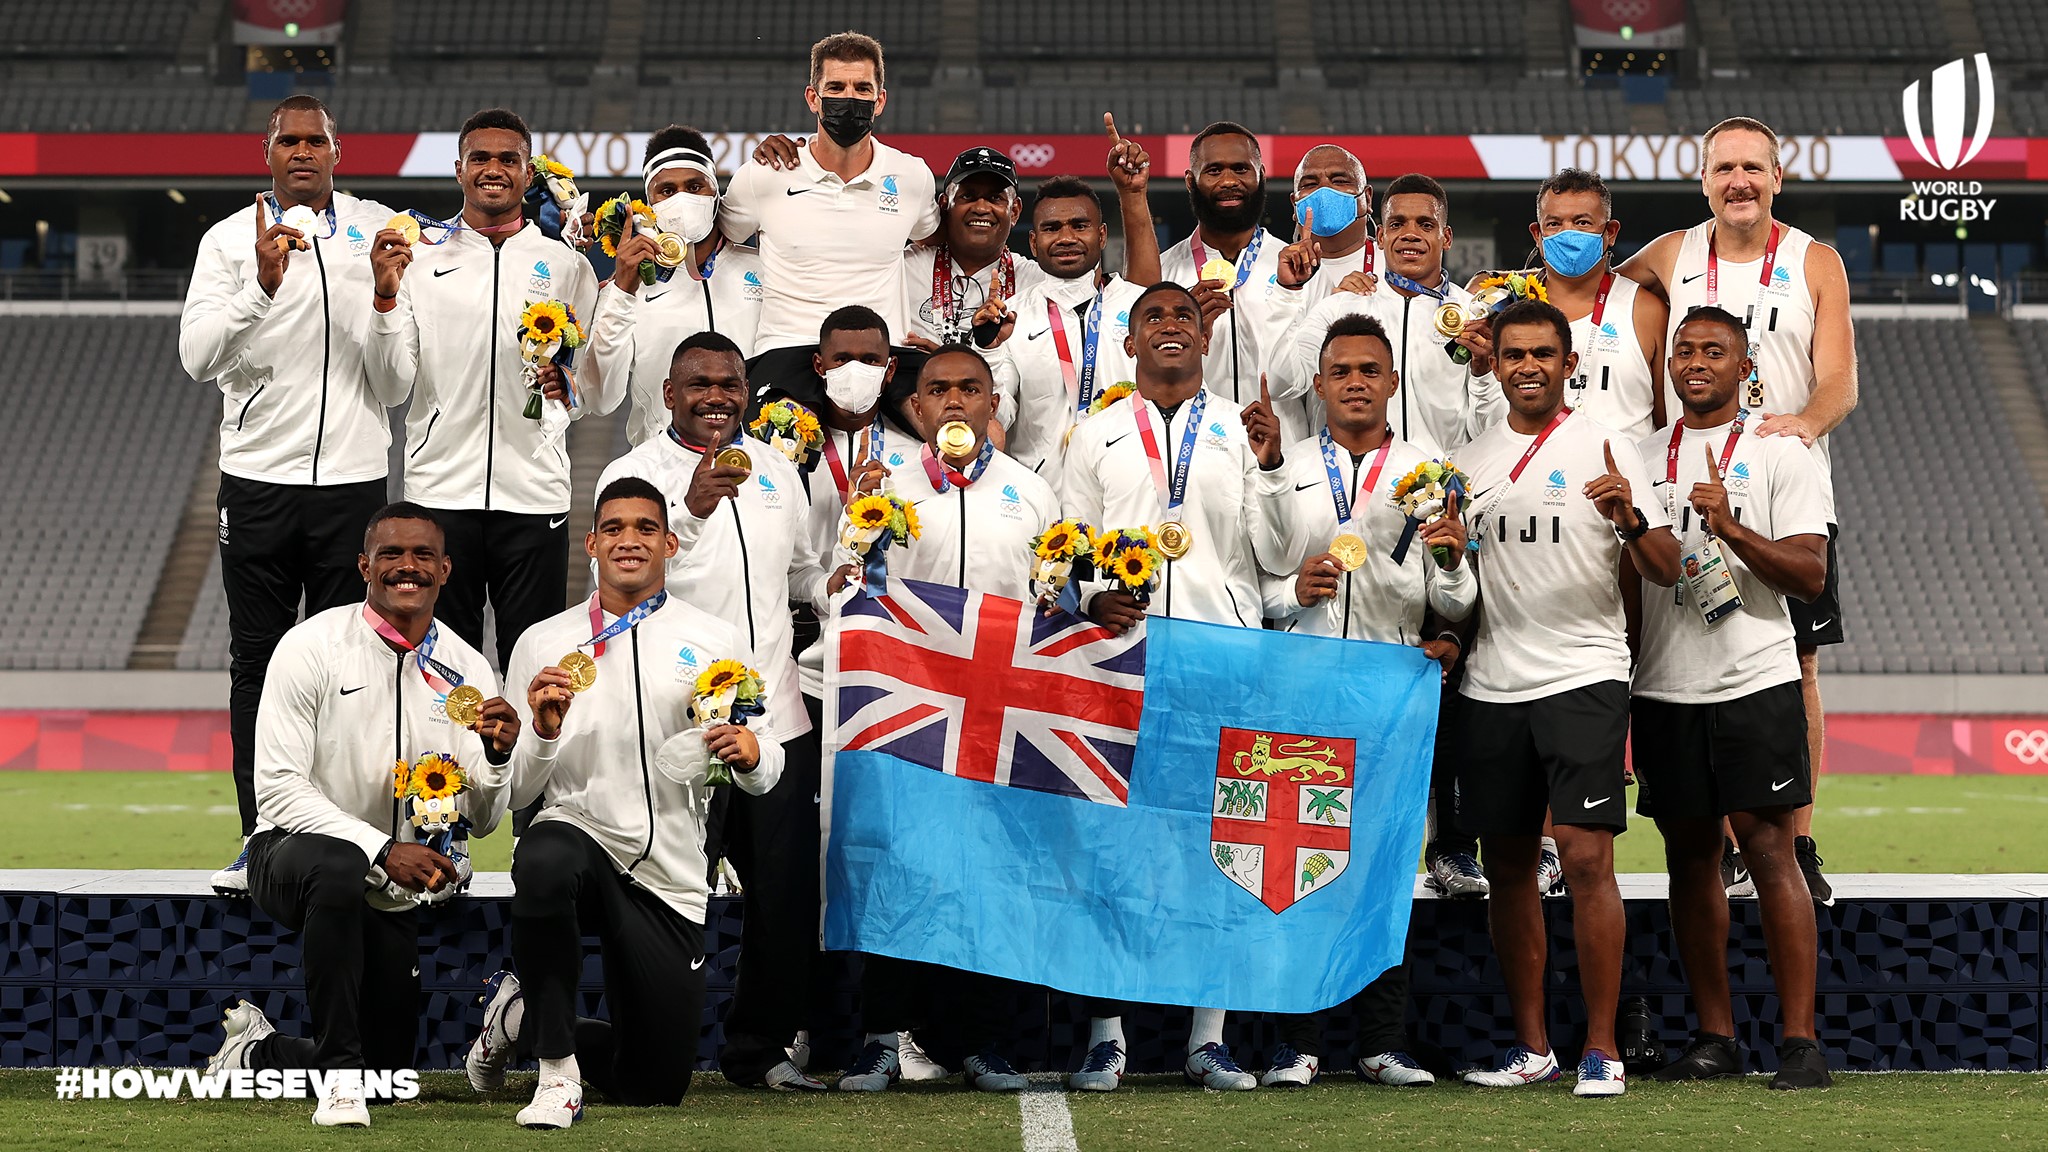 Fiji repite oro en Tokio, acompañado en el podio de Nueva Zelanda y Argentina